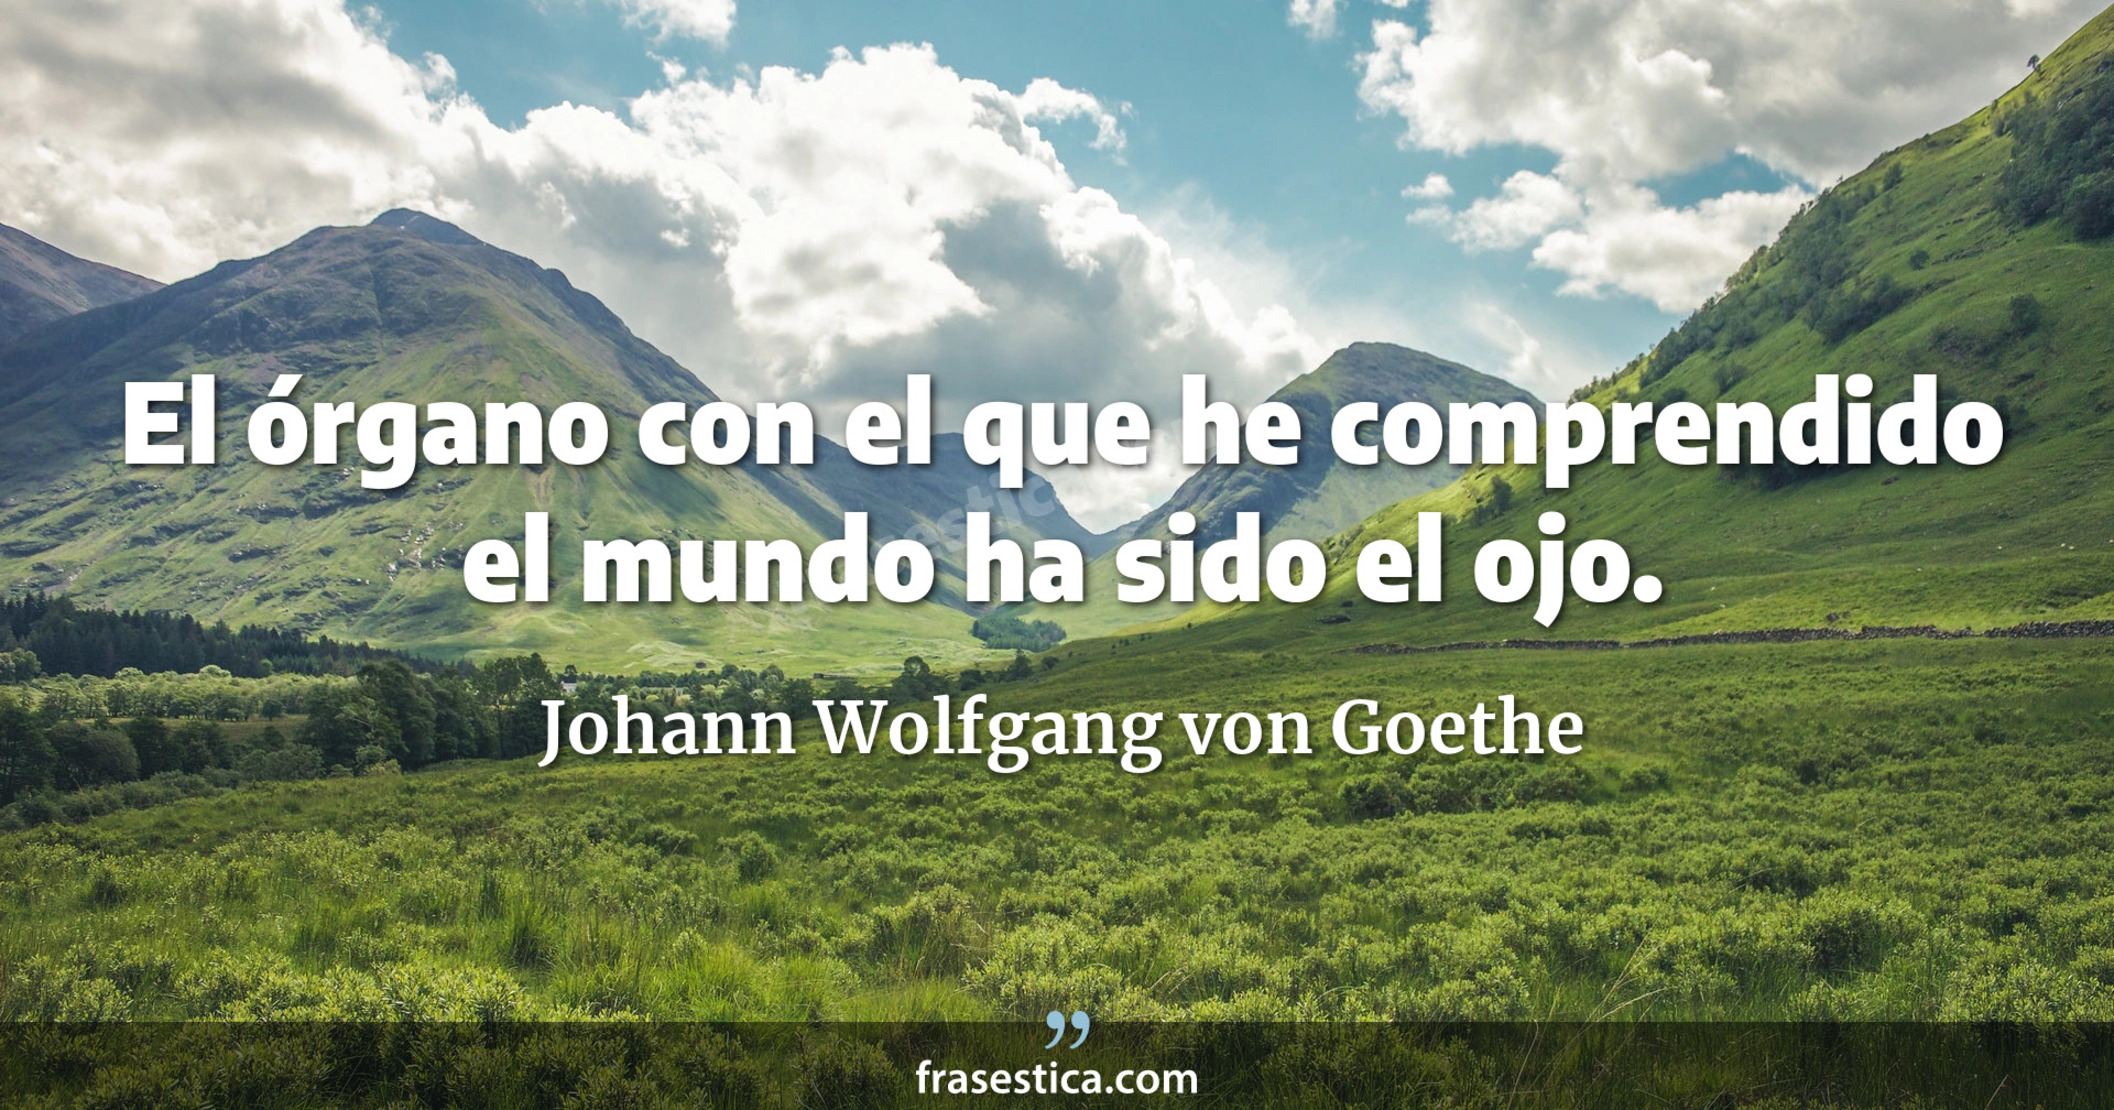 El órgano con el que he comprendido el mundo ha sido el ojo. - Johann Wolfgang von Goethe